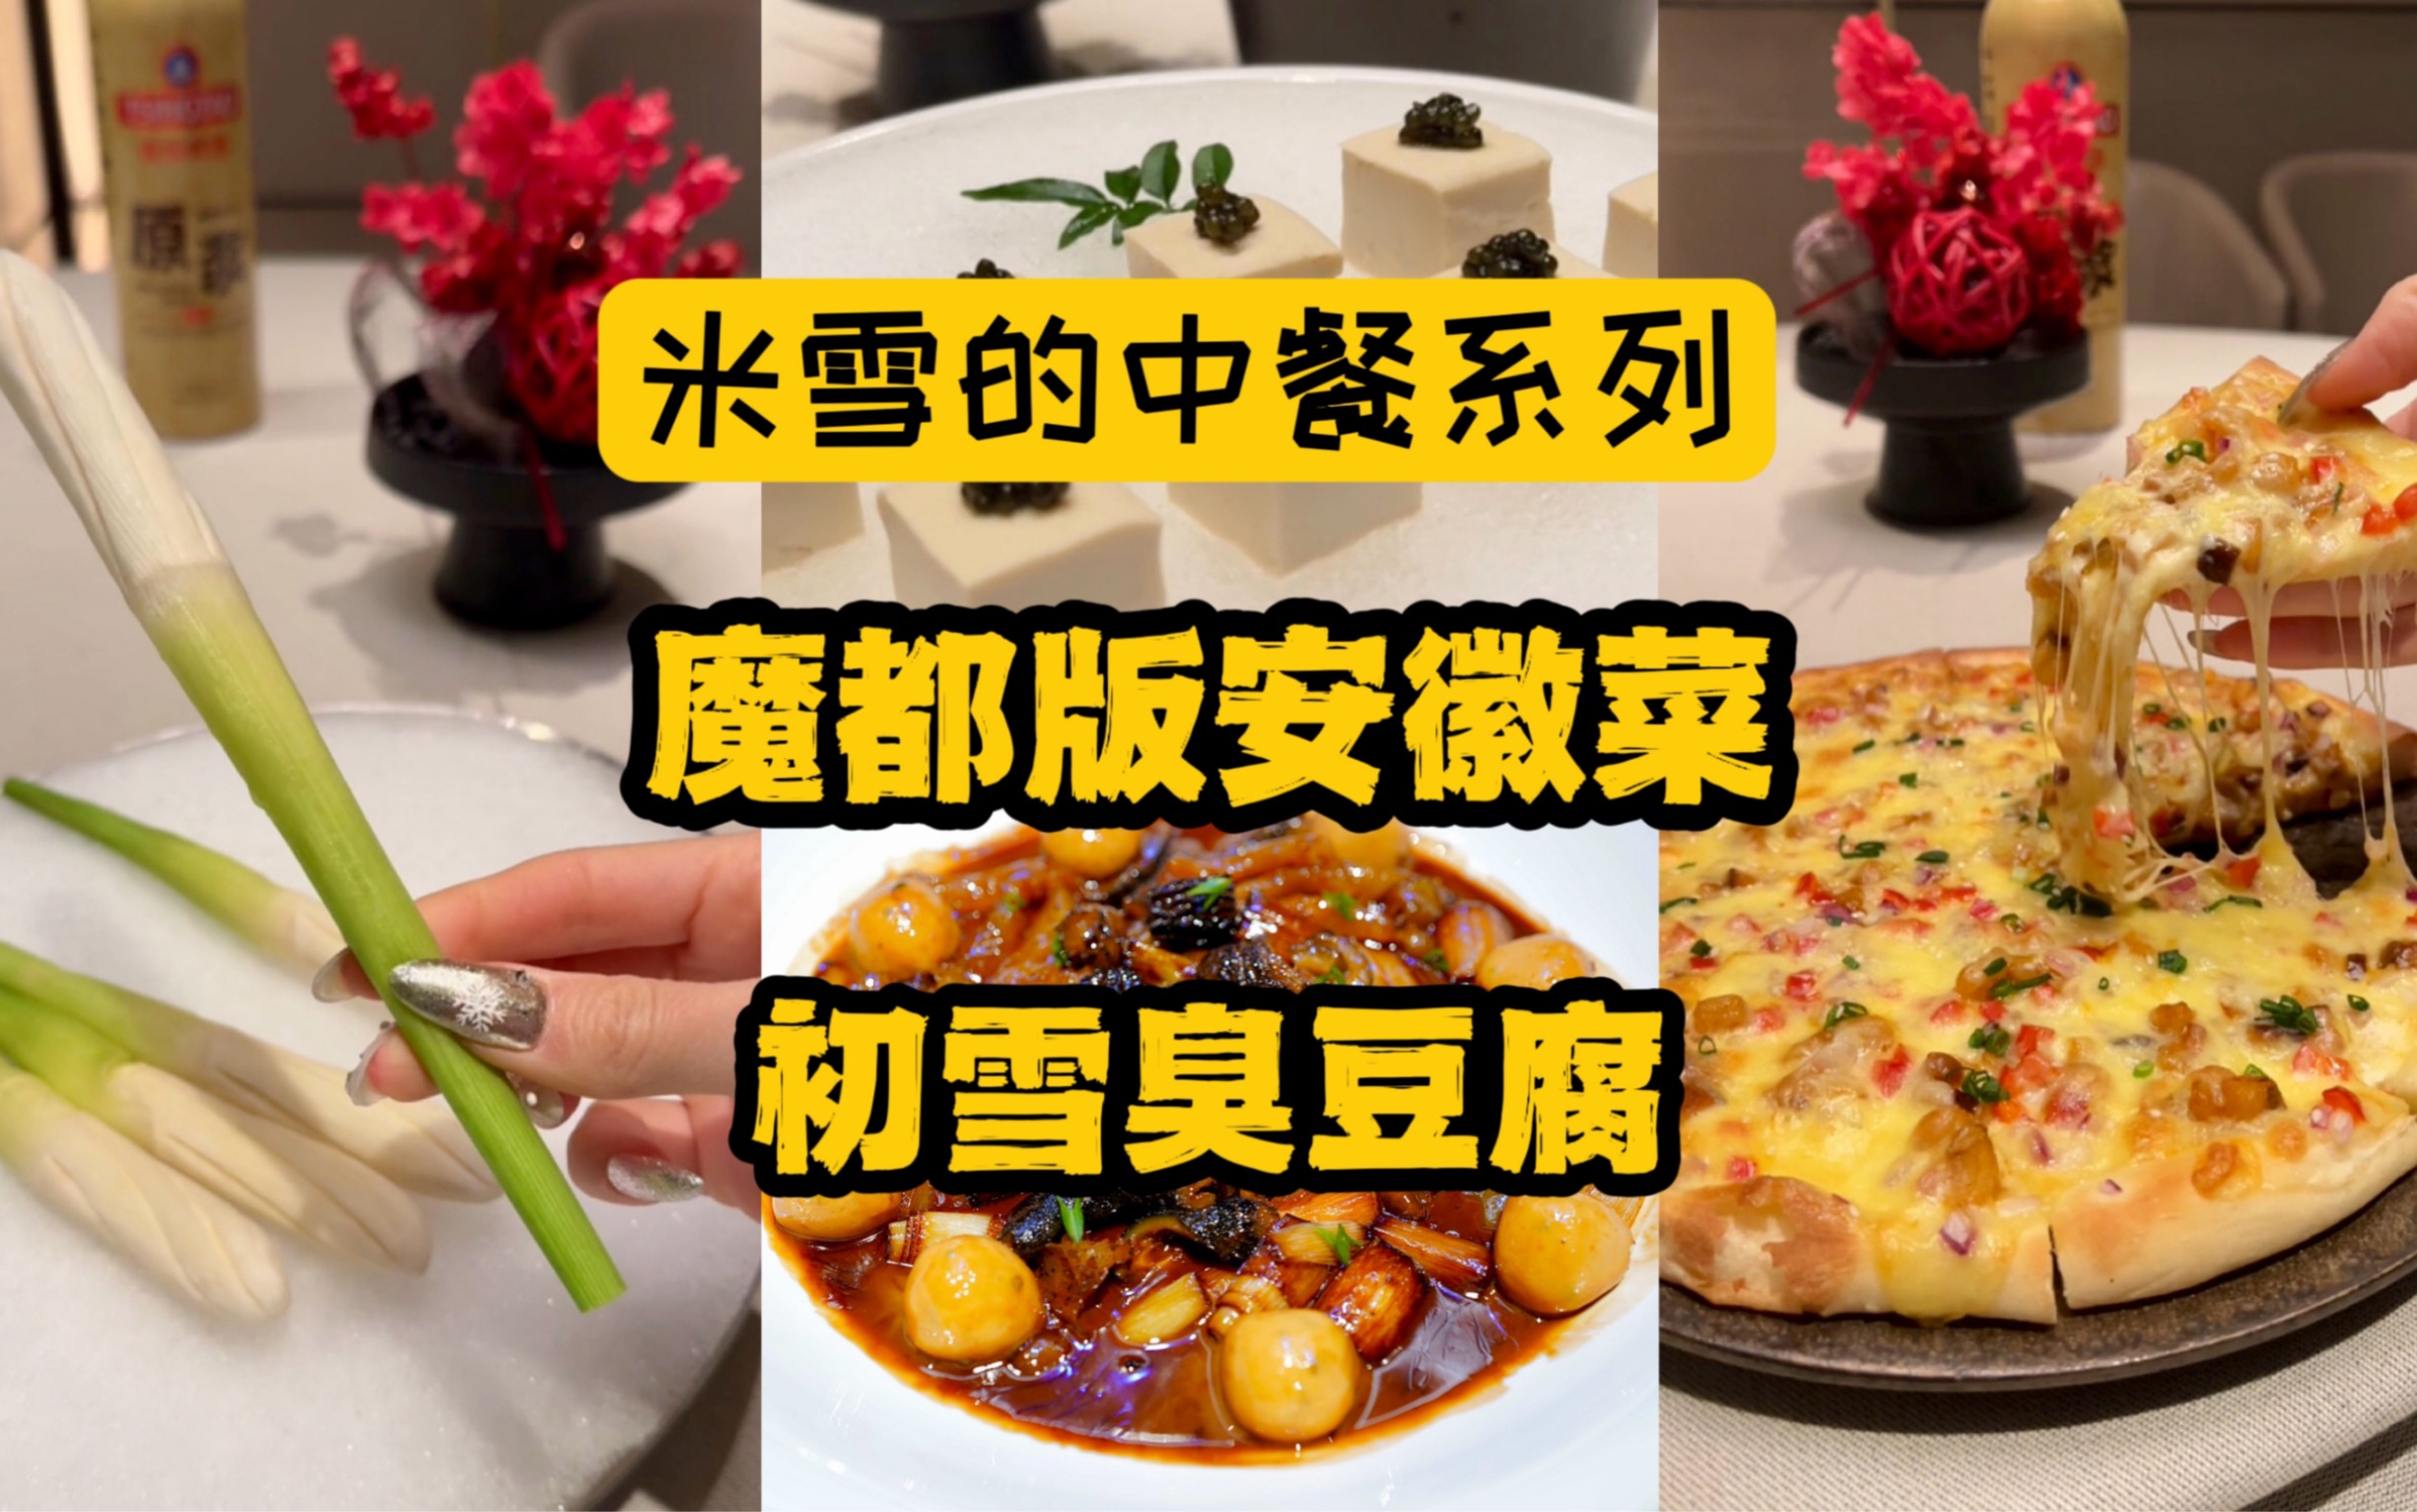 上海买不到的大闸蟹，在蟹农家的一顿农家菜。-米雪食记-米雪食记-哔哩哔哩视频